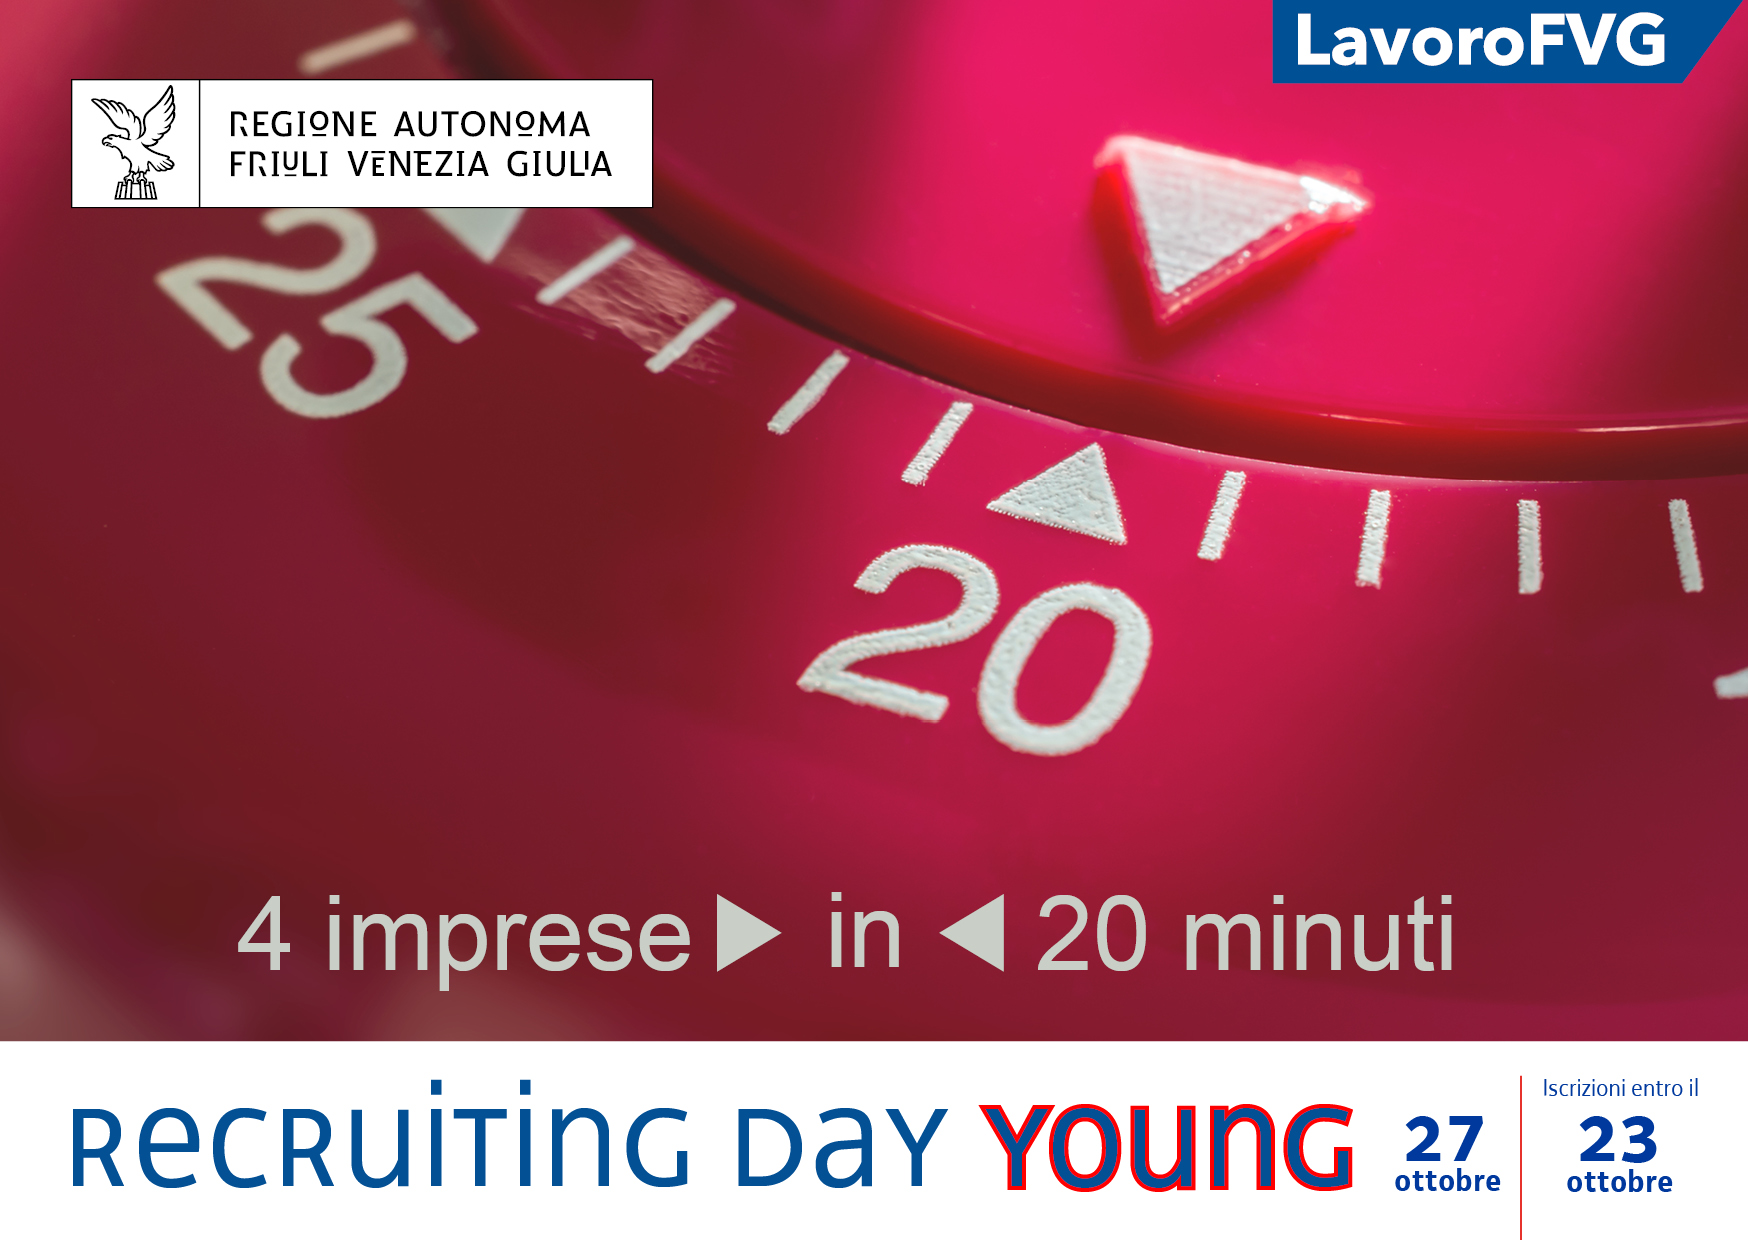 RECRUITING DAY YOUNG - InformaGiovani di Udine e Serv. Imprese Regione FVG